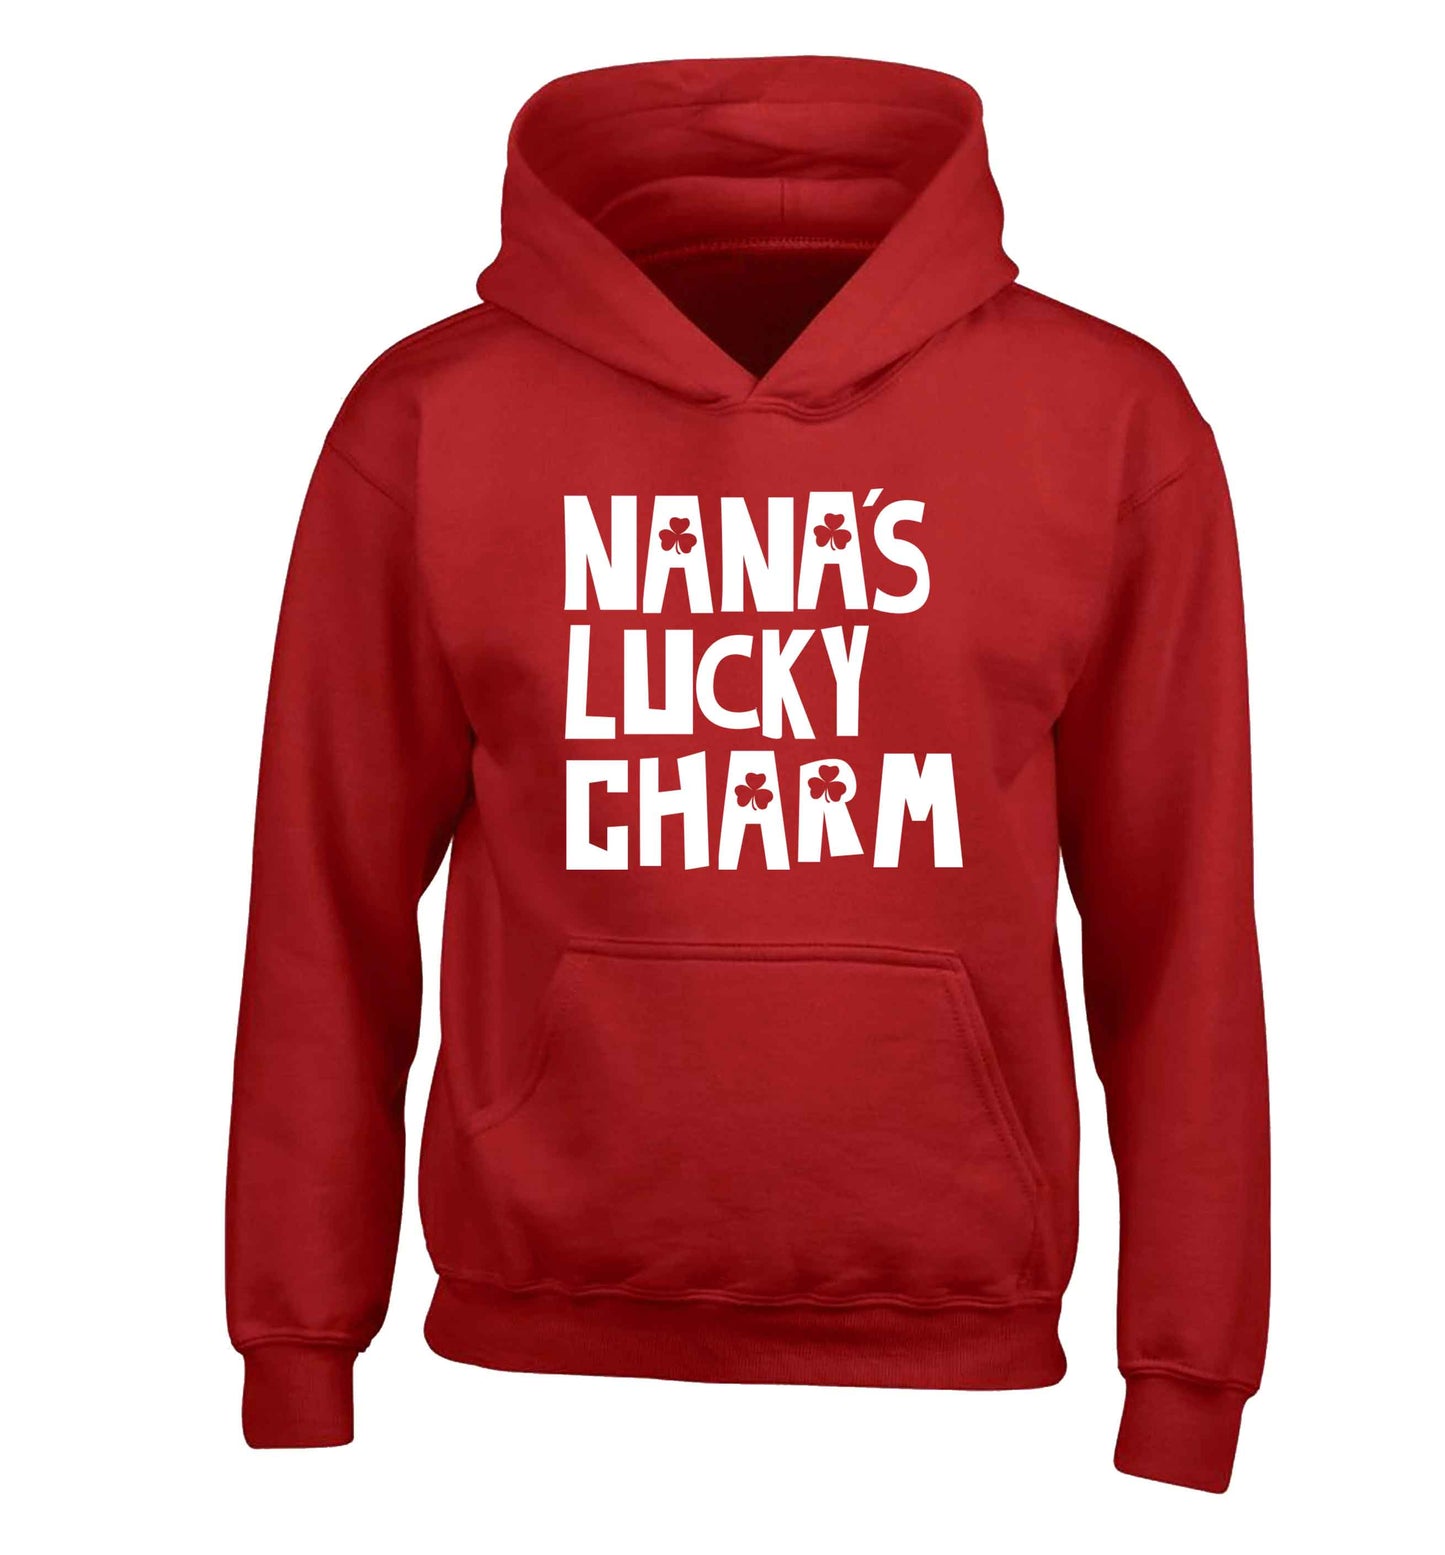 Nana's lucky charm children's red hoodie 12-13 Years